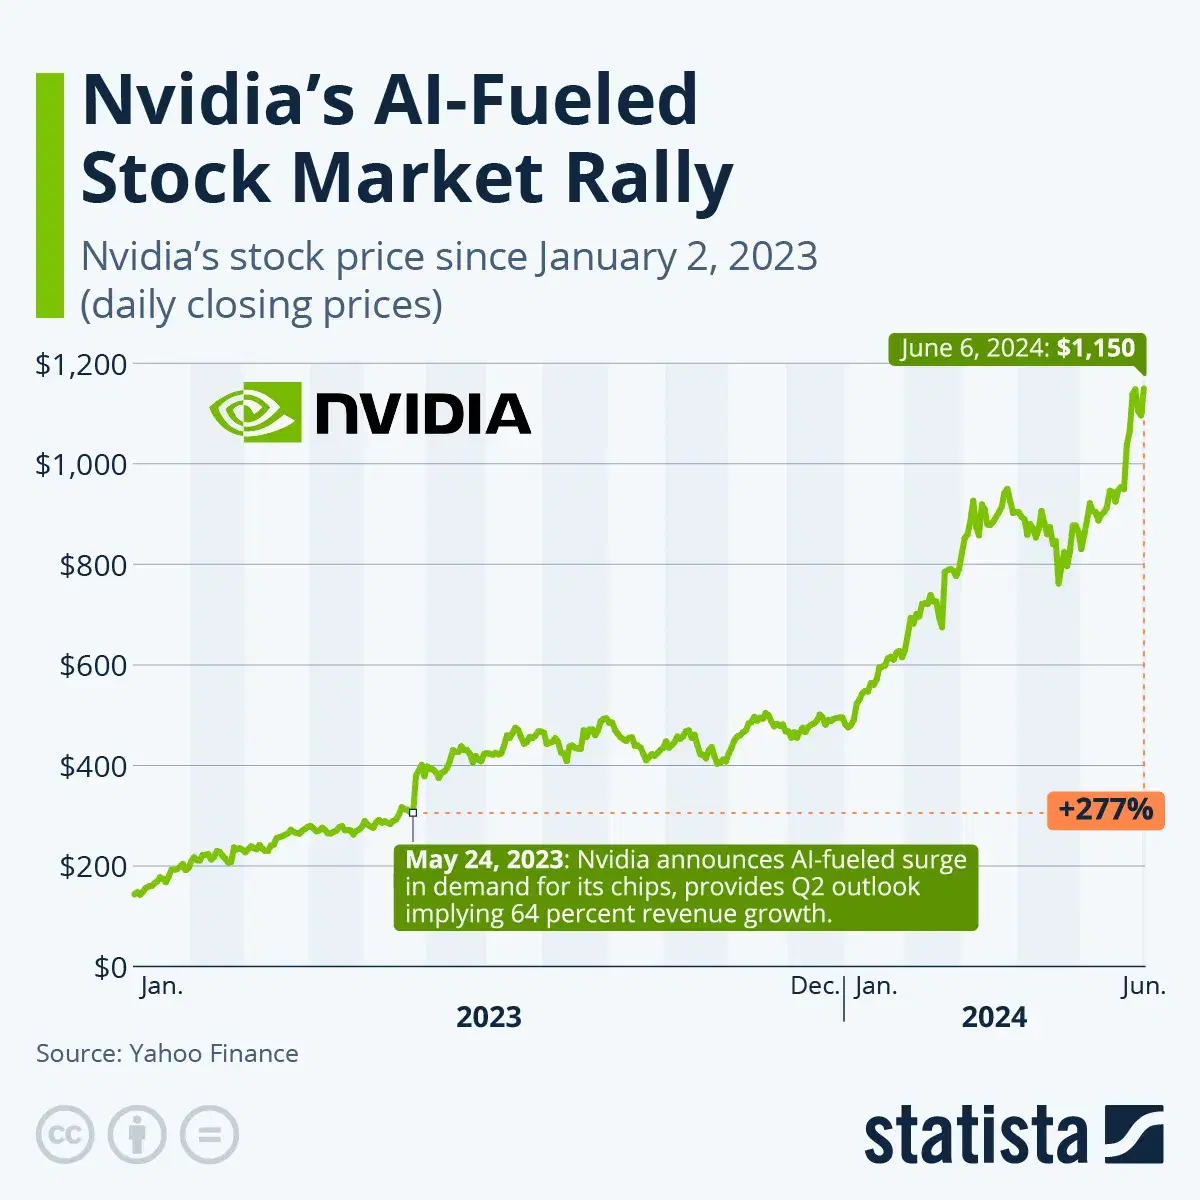 Nvidia's AI-Fueled Stock Market Rally